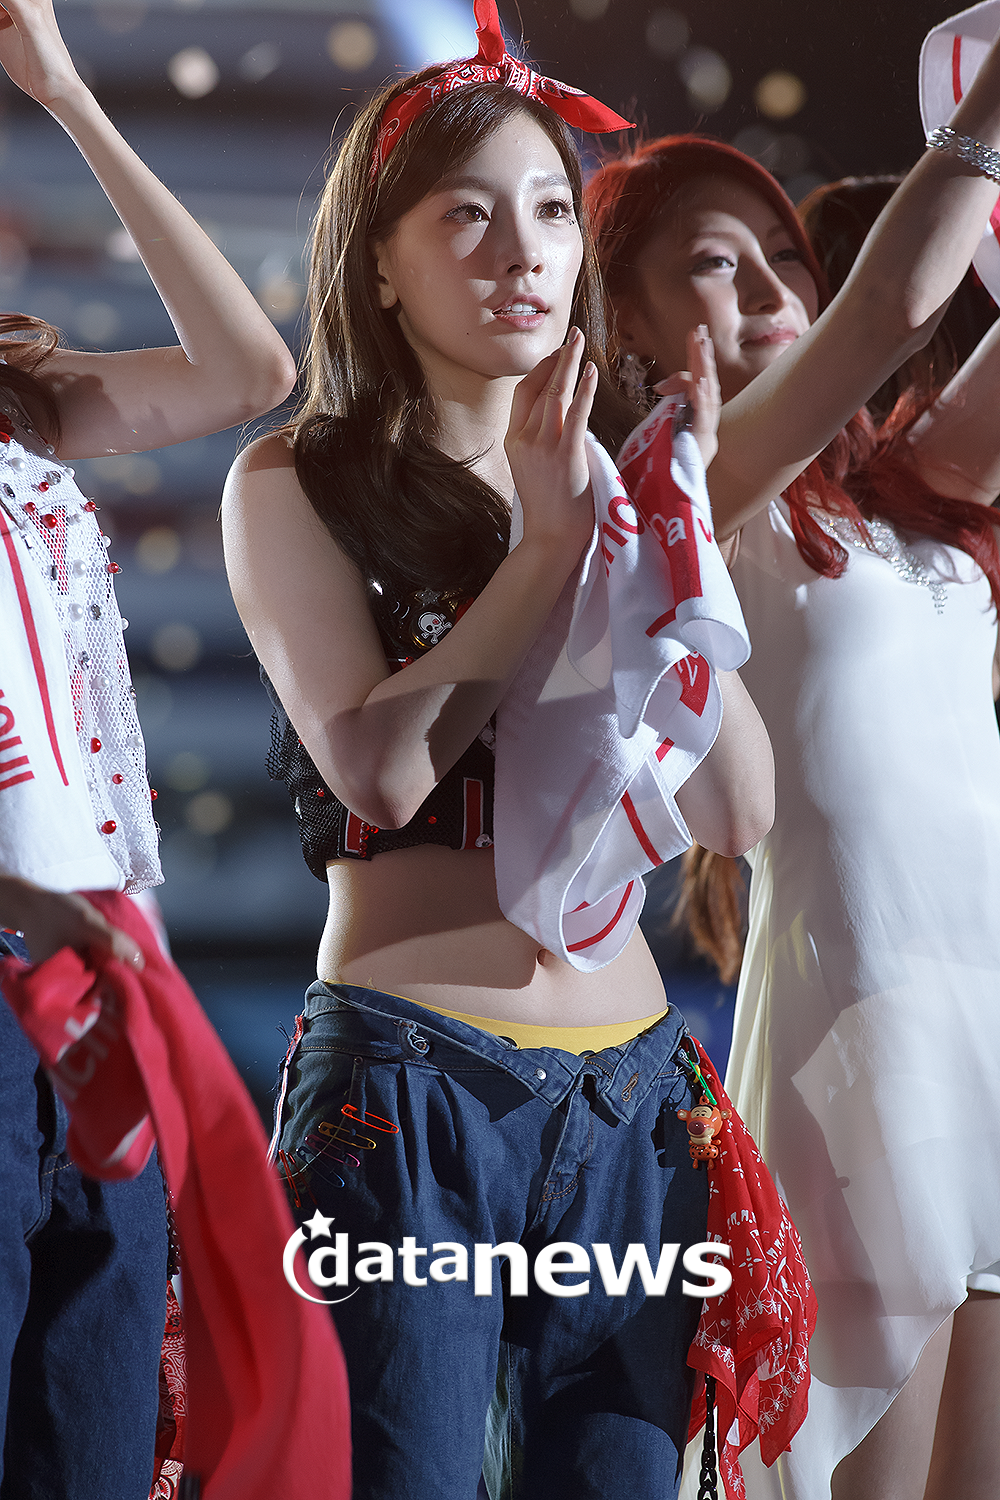 [PIC][01-09-2013]Hình ảnh mới nhất từ "Incheon Korean Music Wave 2013" của SNSD và MC YulTi vào tối nay - Page 2 234F4F4C52238E2615BCCA